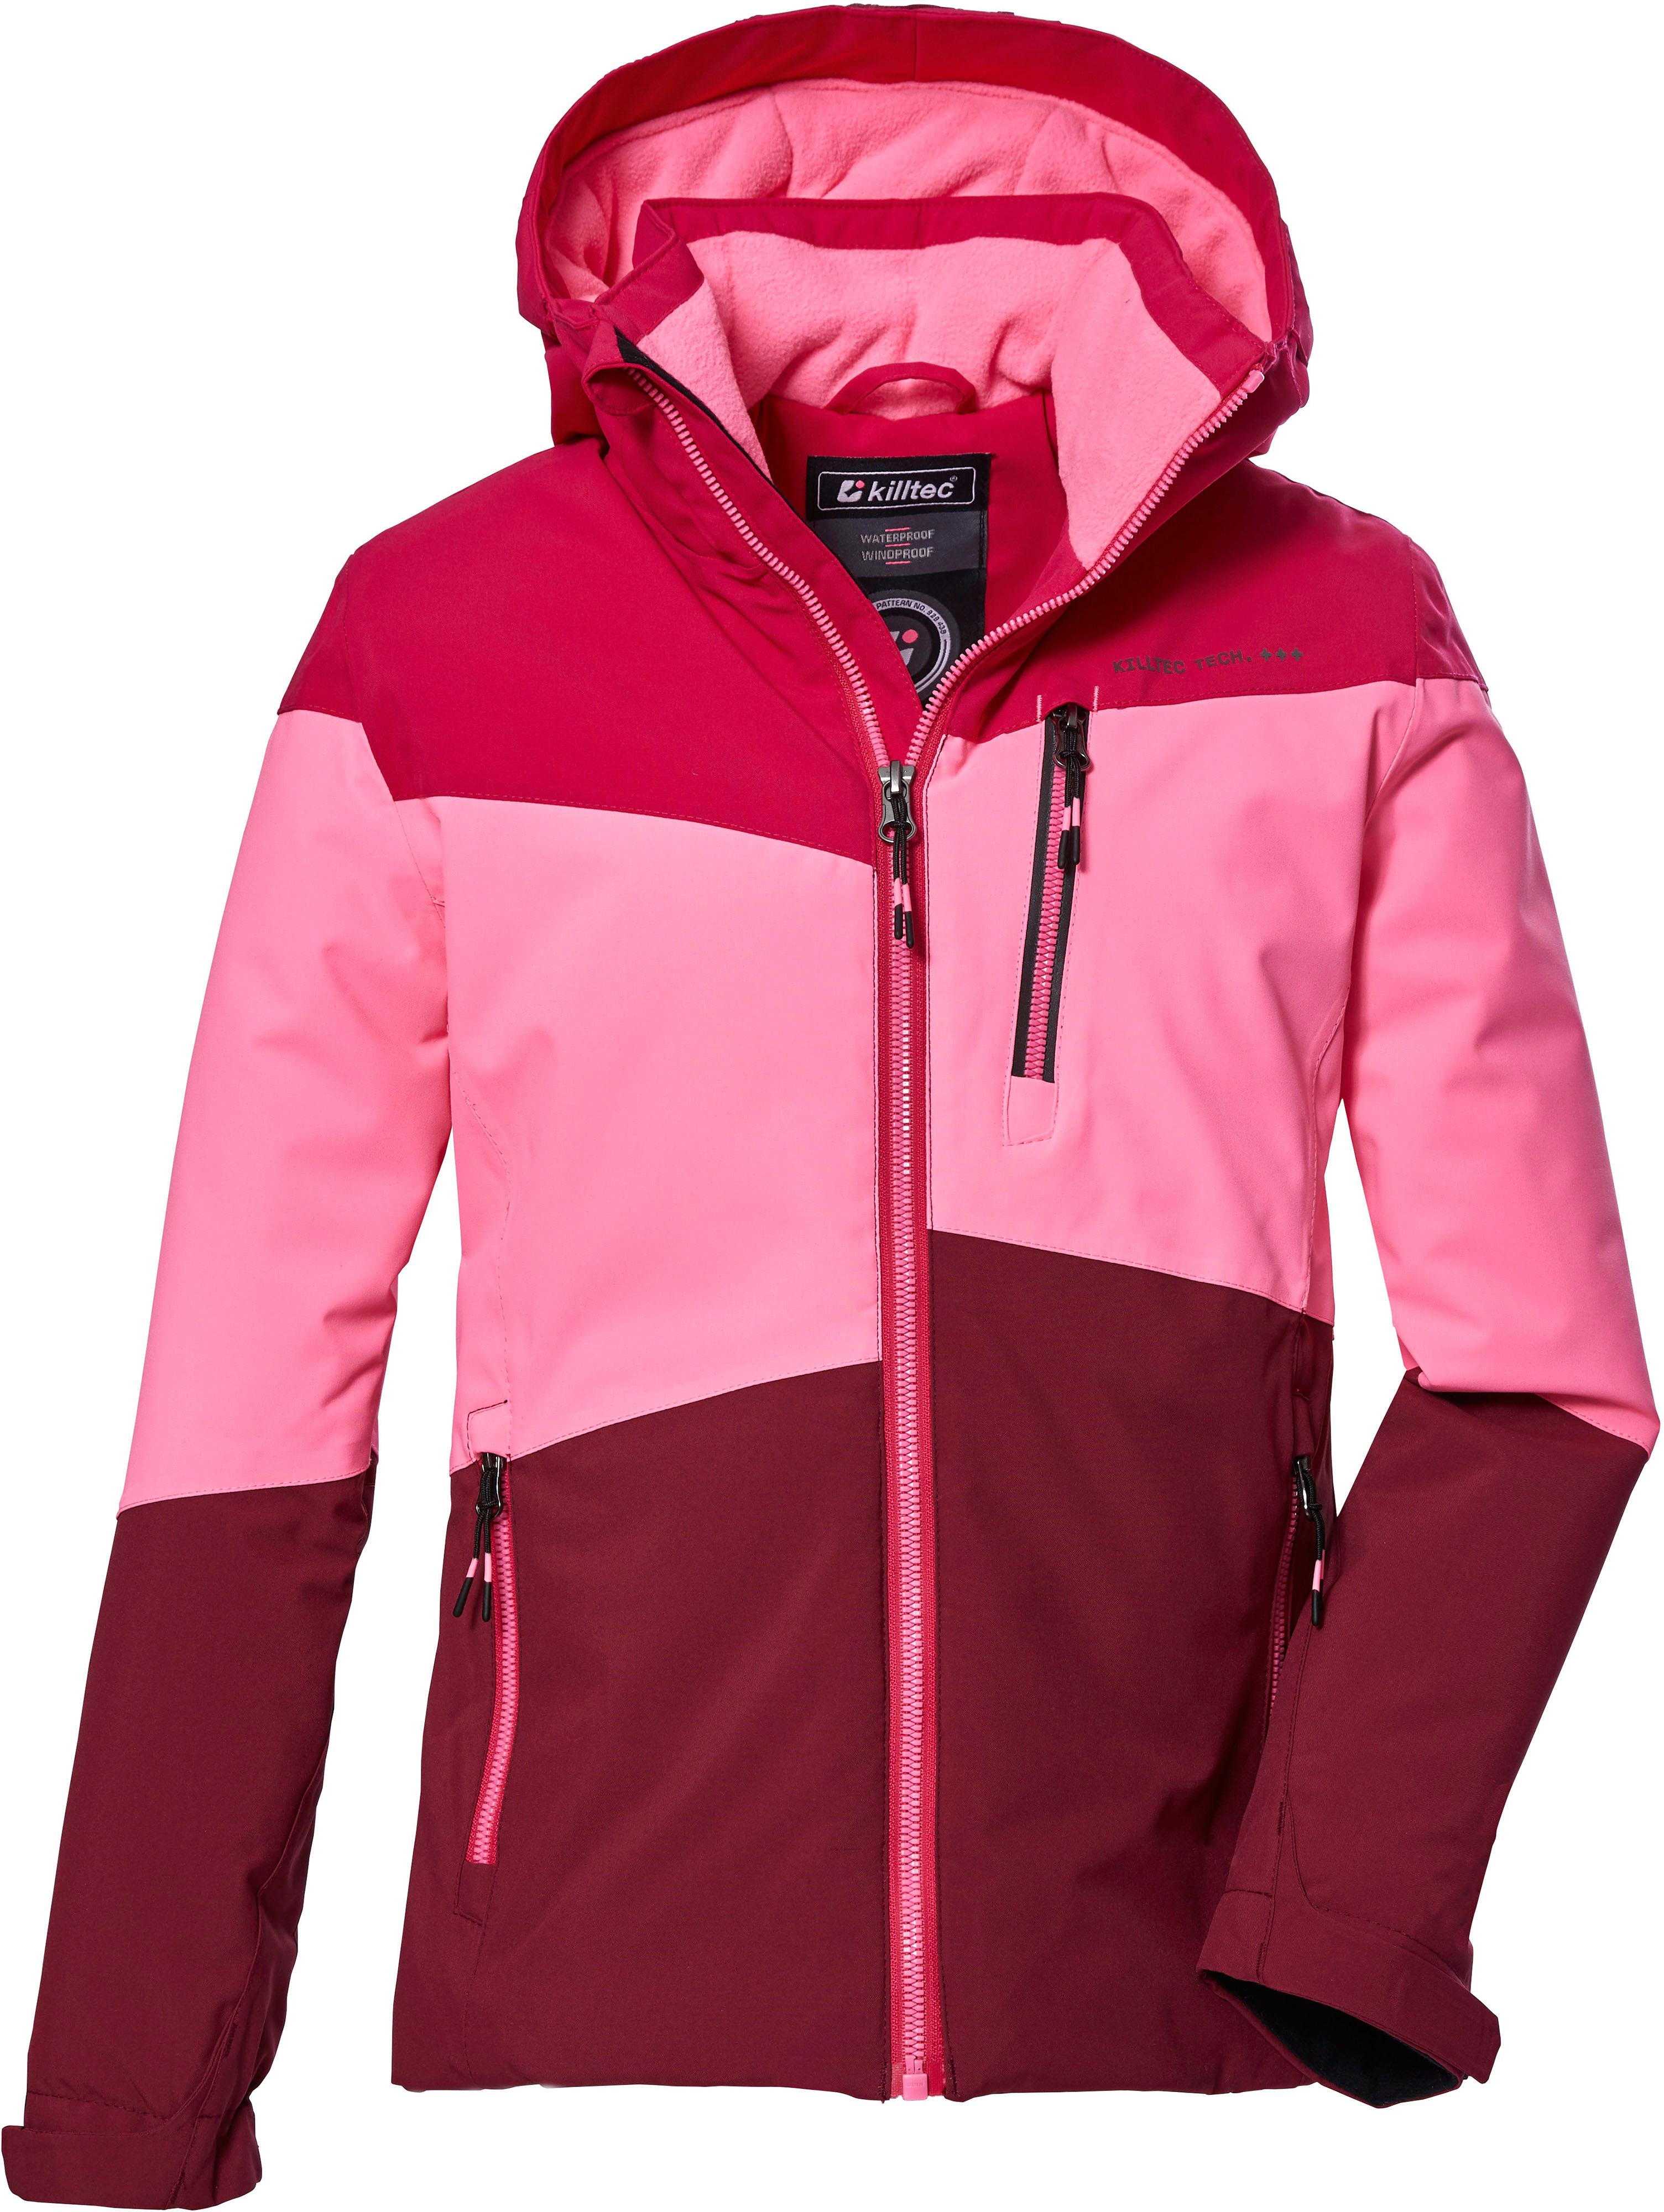 Shop SportScheck Mädchen 170 von Online kaufen pink im Skijacke KOW KILLTEC